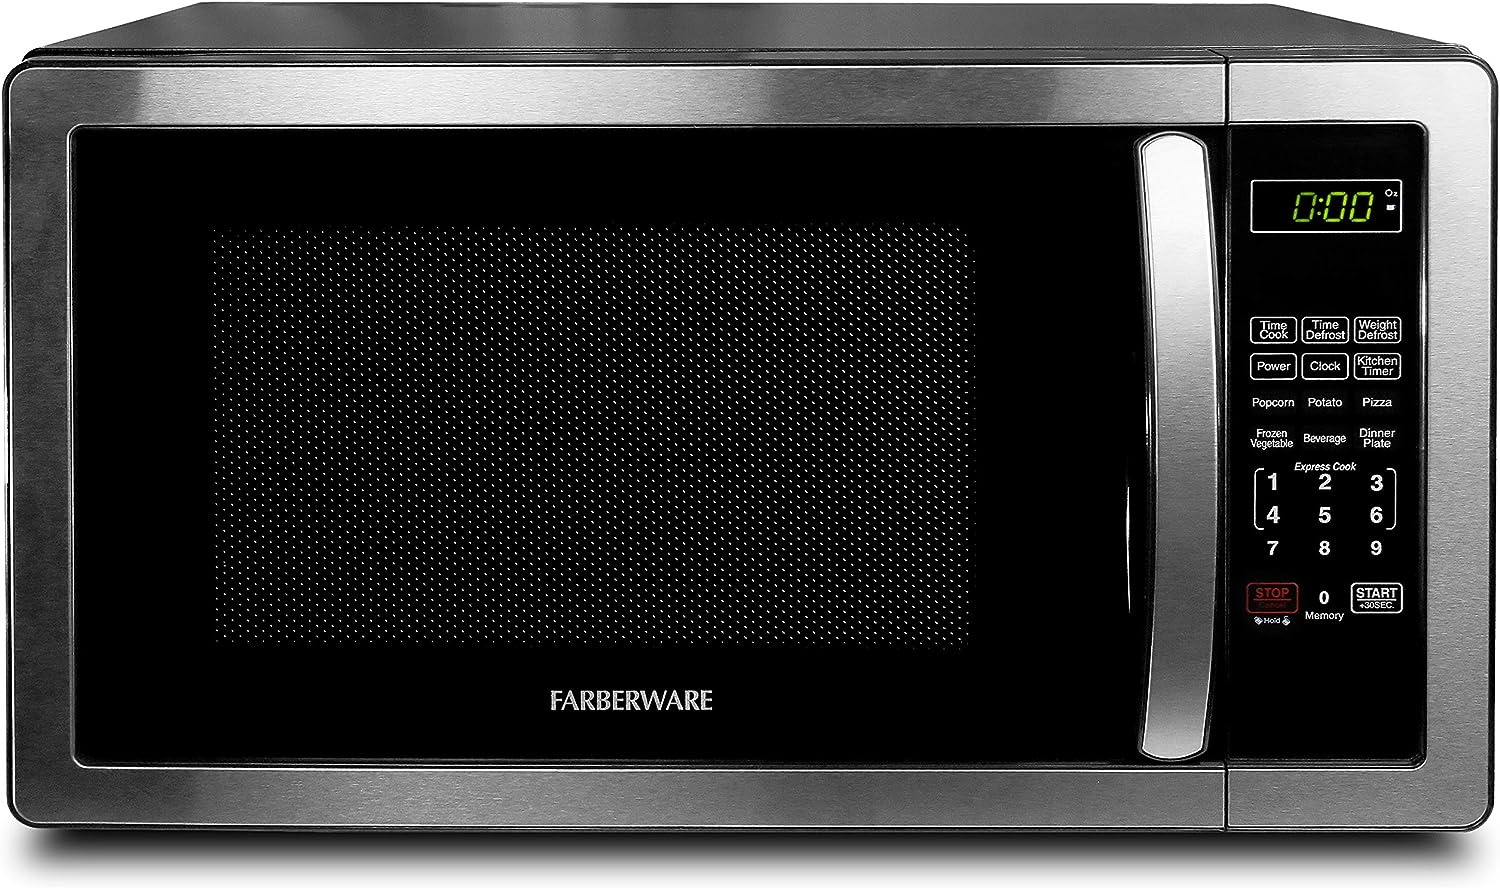 Farberware Countertop Microwave